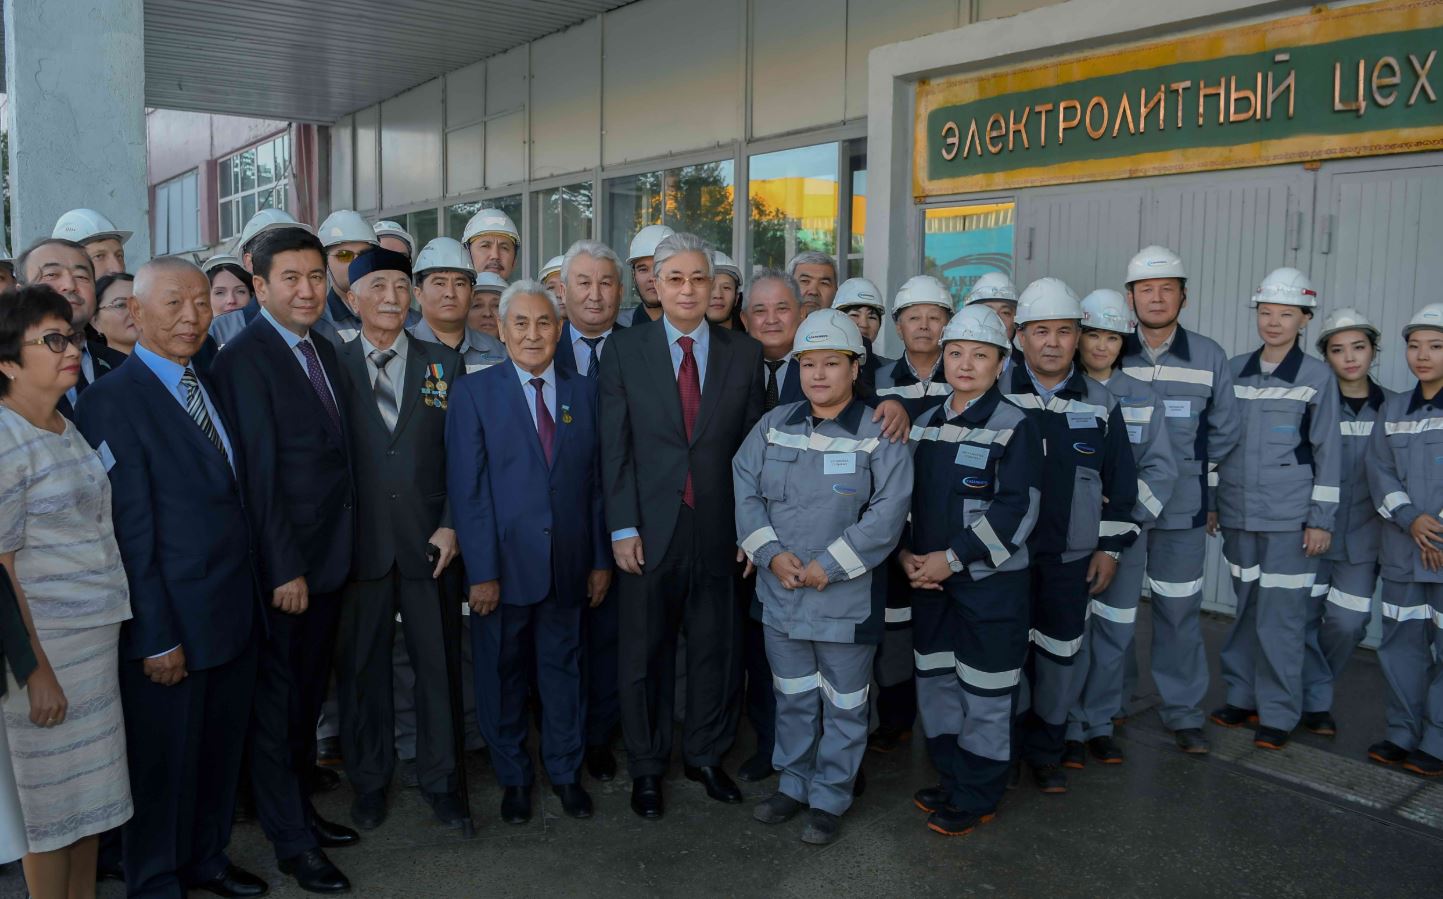 President of Kazakhstan Kassym-Jomart Tokayev visited the Kazakhmys Smelting LLP copper smelting plant in Zhezkazgan